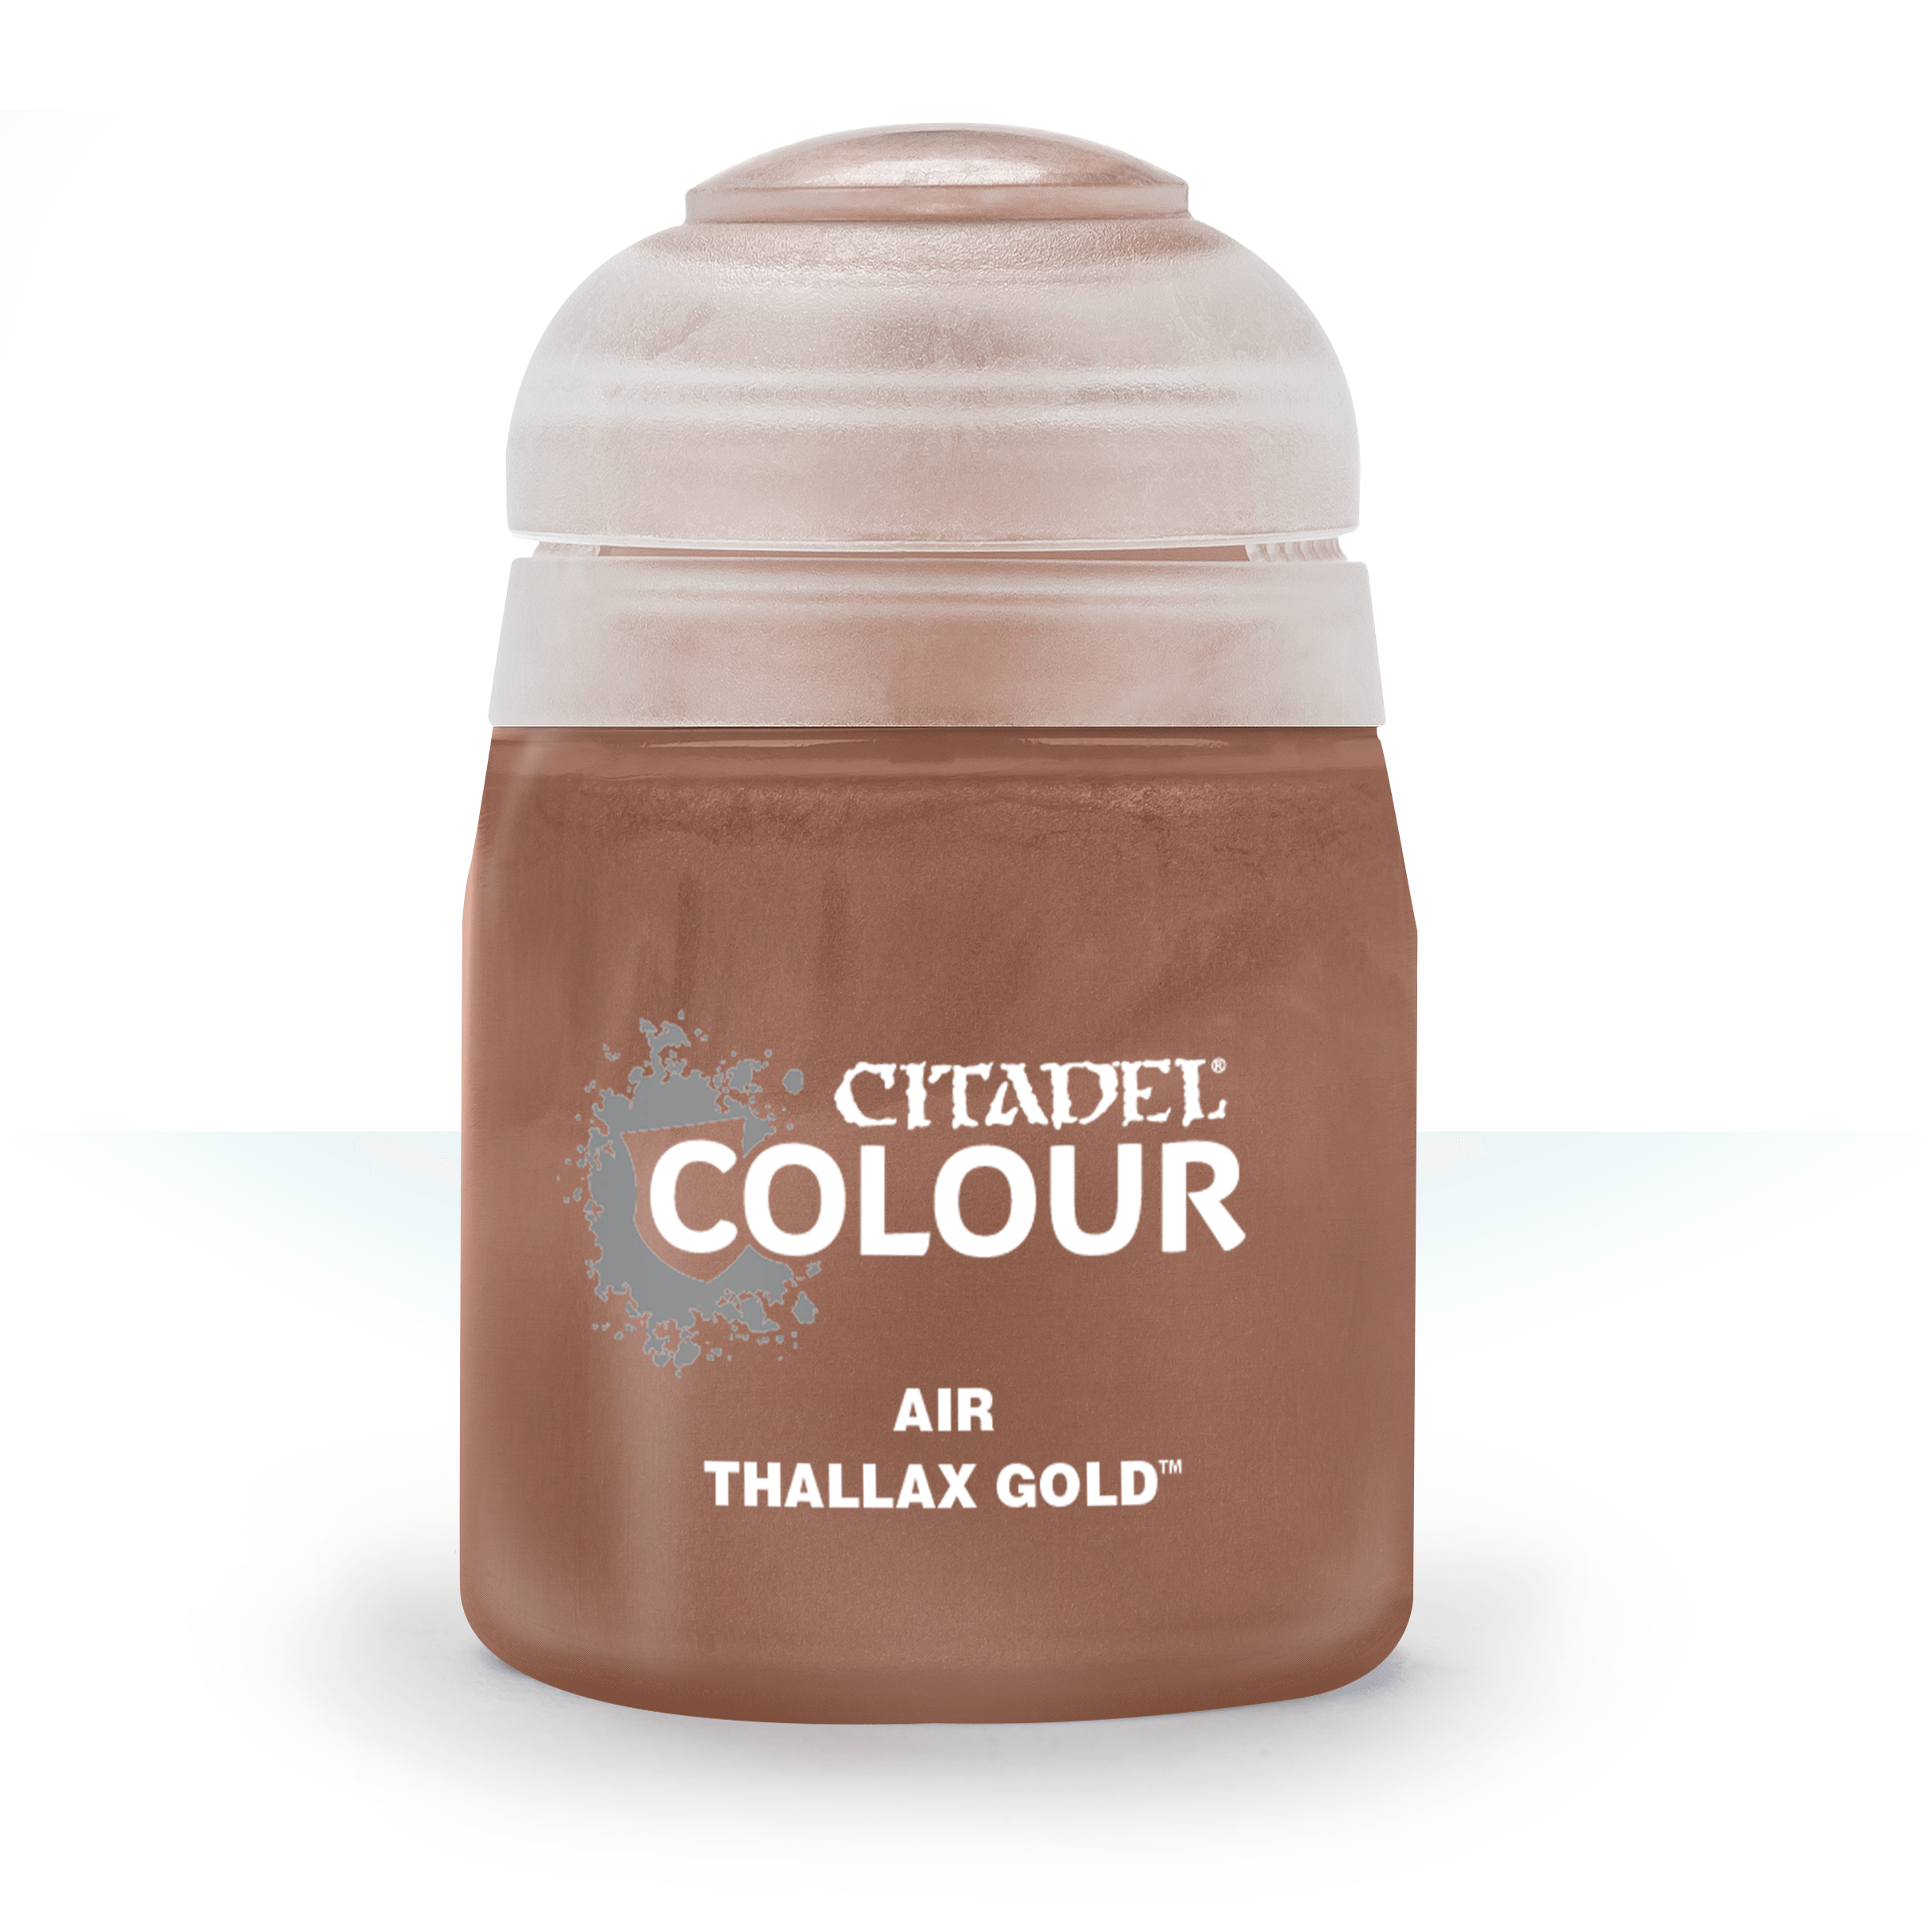 Air Thallax Gold - Citadel Colour - 24 ml